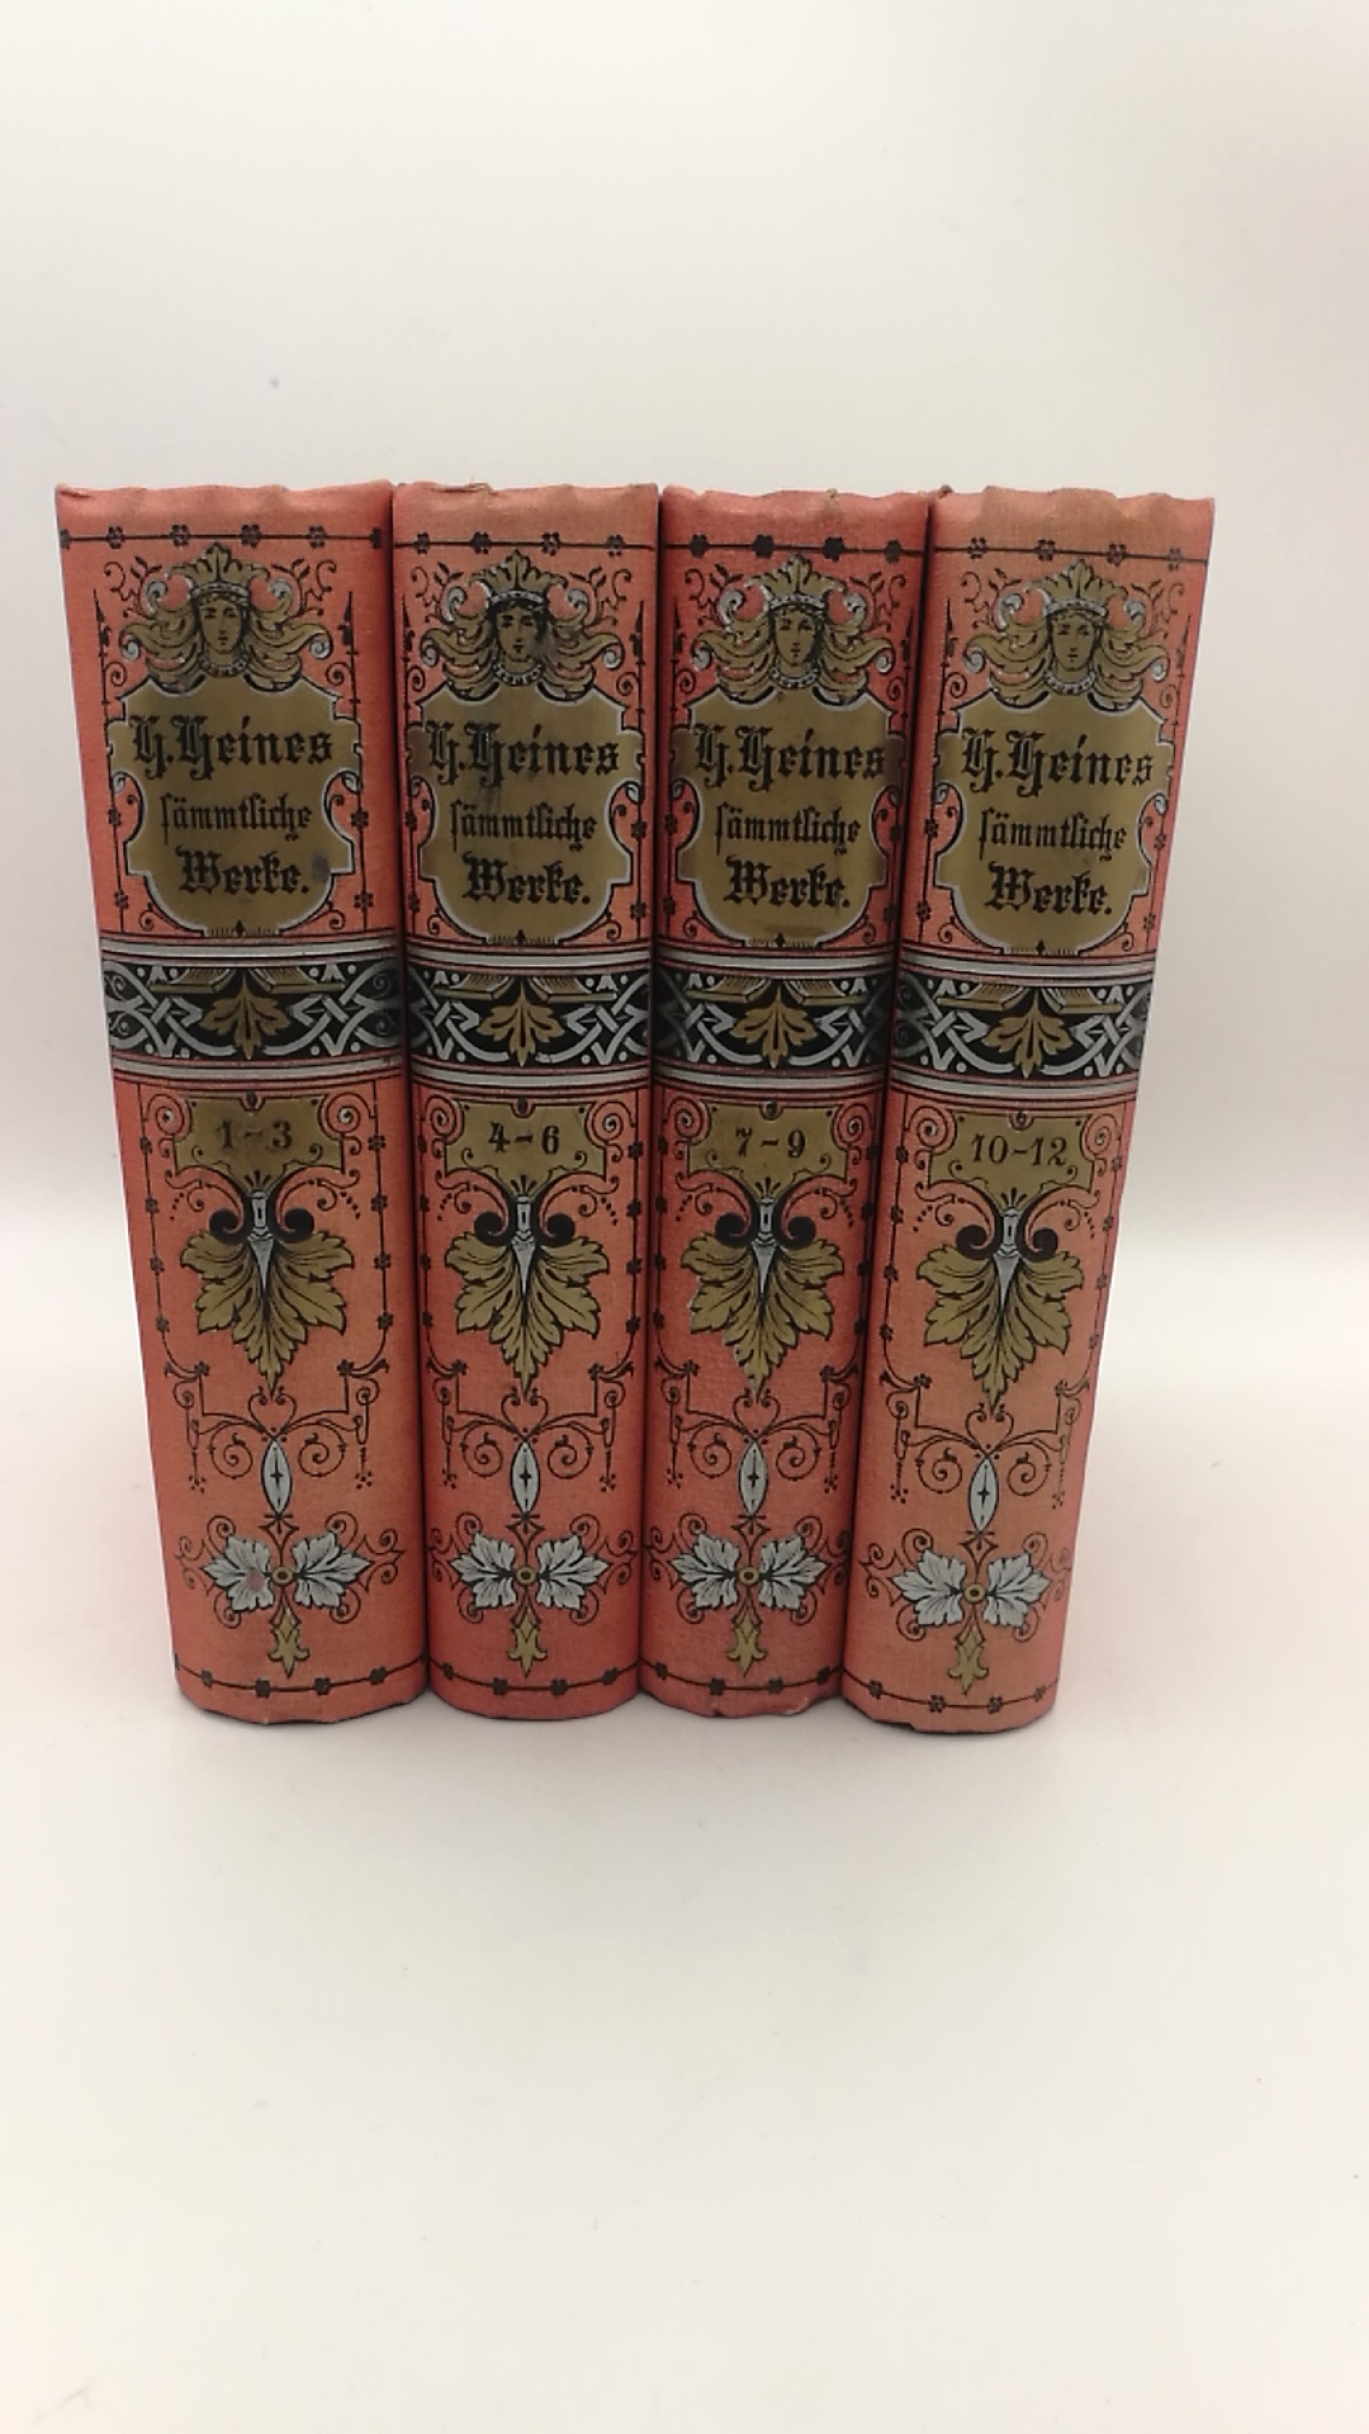 Karpeles, G. ((Hrsg.): Heinrich Heine's Sämmtliche Werke. (=vollst.) Ausgabe in 12 Bänden (in 4 Büchern)